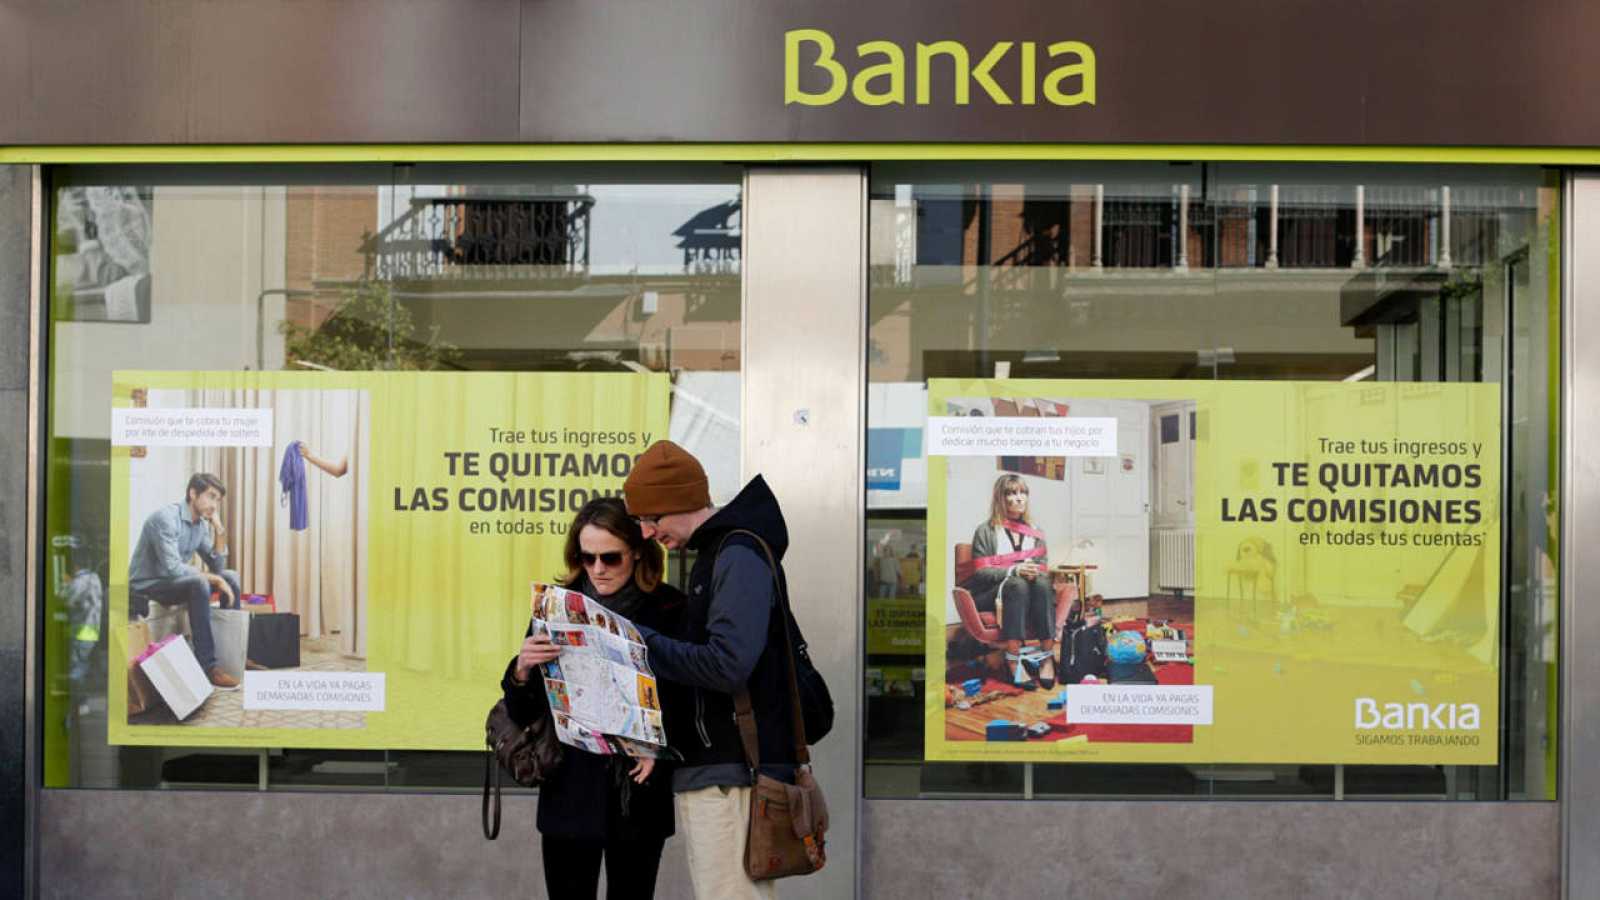 El Supremo condena a Bankia a indemnizar a dos particulares que adquirieron acciones dos días antes de que se reformularan las cuentas de la entidad